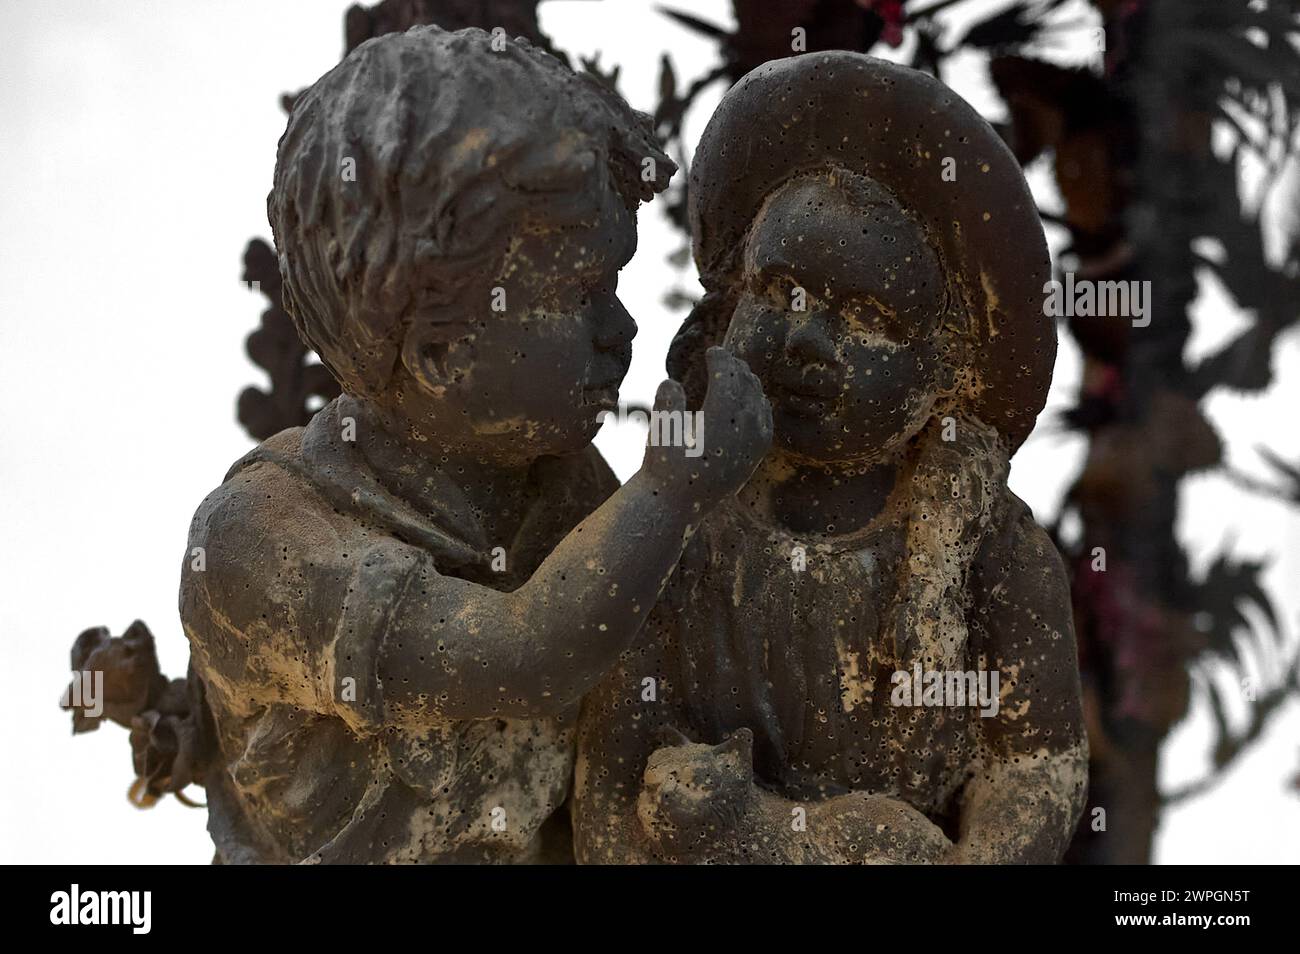 Sculpture de deux enfants en chocolat, l'un serrant l'autre, évoquant des sentiments d'amitié et d'affection. Banque D'Images